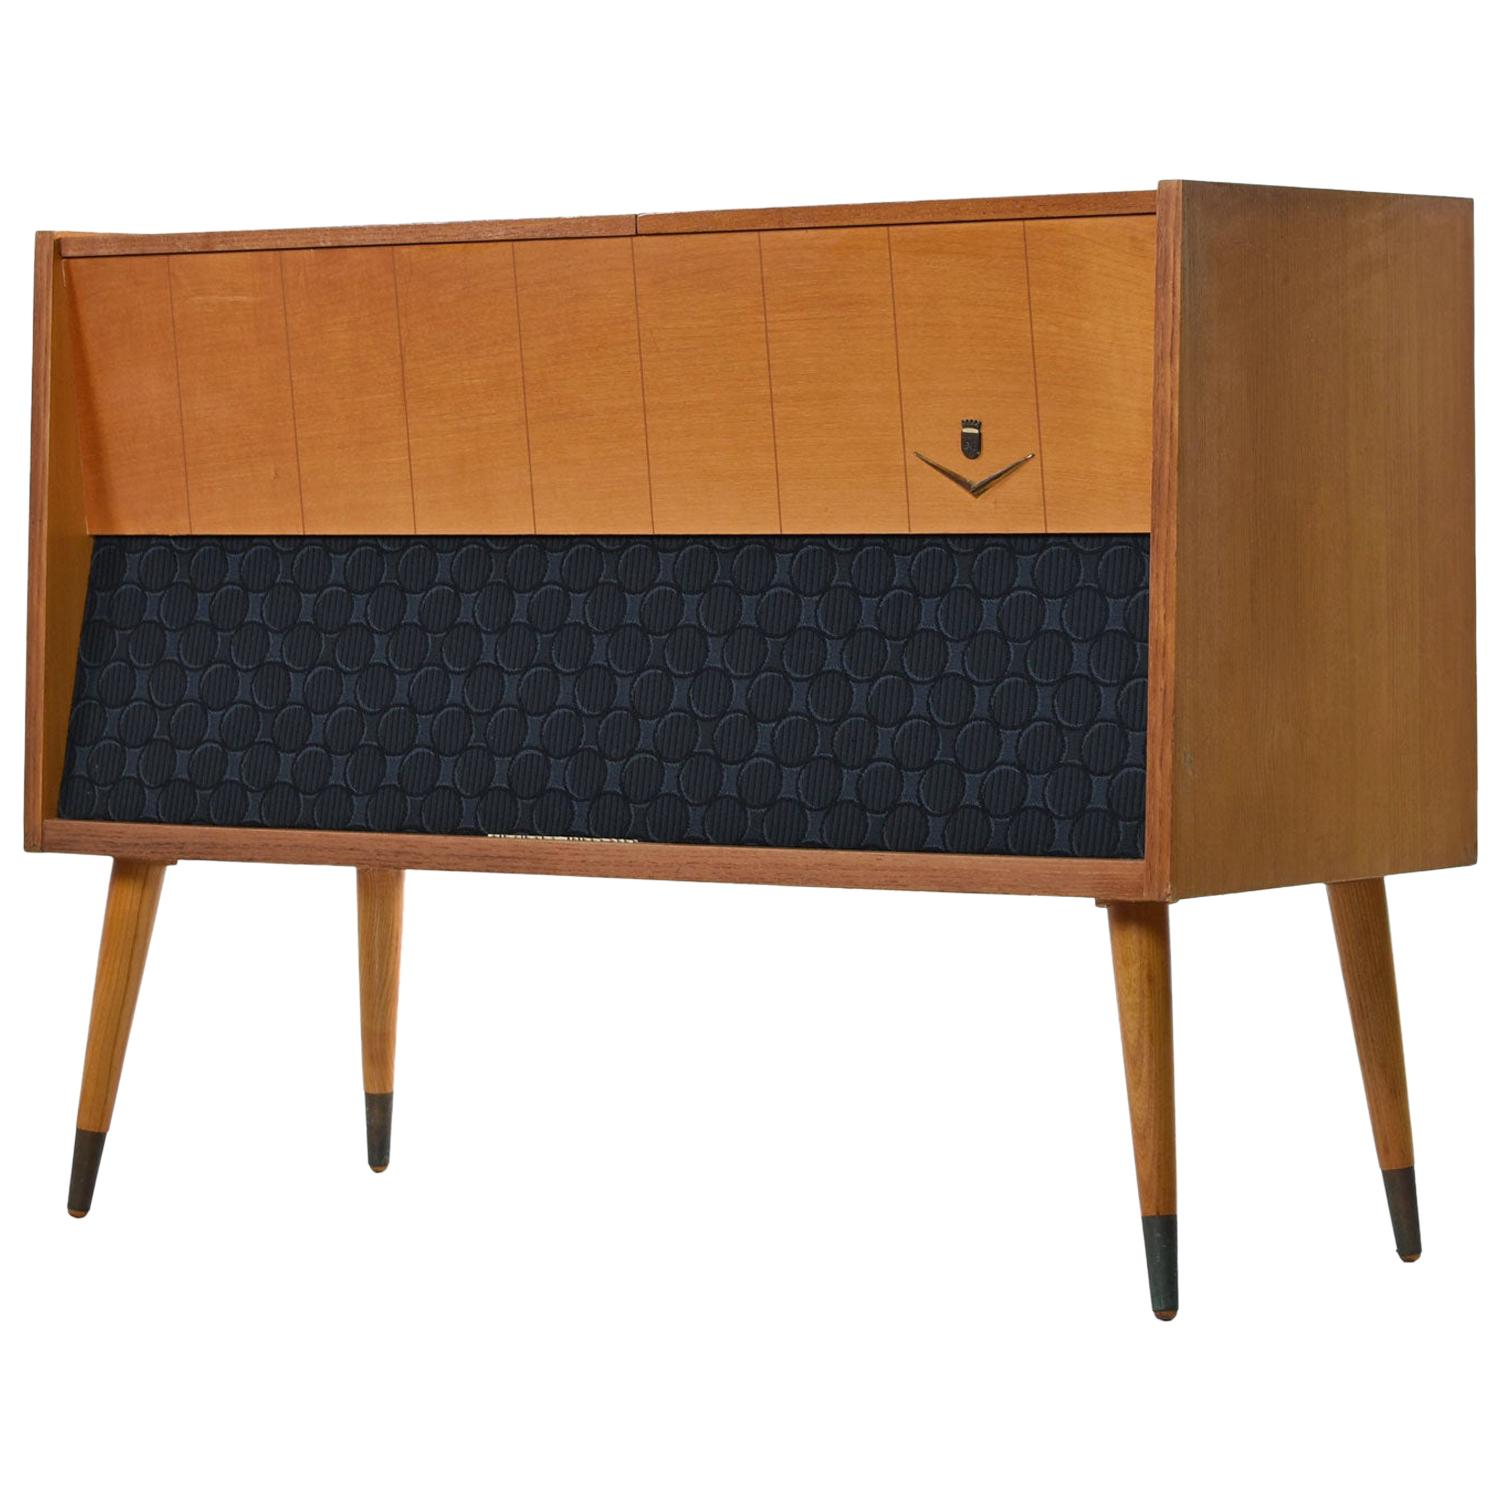 Console stéréo Grundig Majestic restaurée avec amour. Ce meuble de style Rockabilly moderne allemand des années 1950 est non seulement magnifique:: mais il sonne aussi très bien. Les audiophiles et les auditeurs occasionnels apprécieront tous la